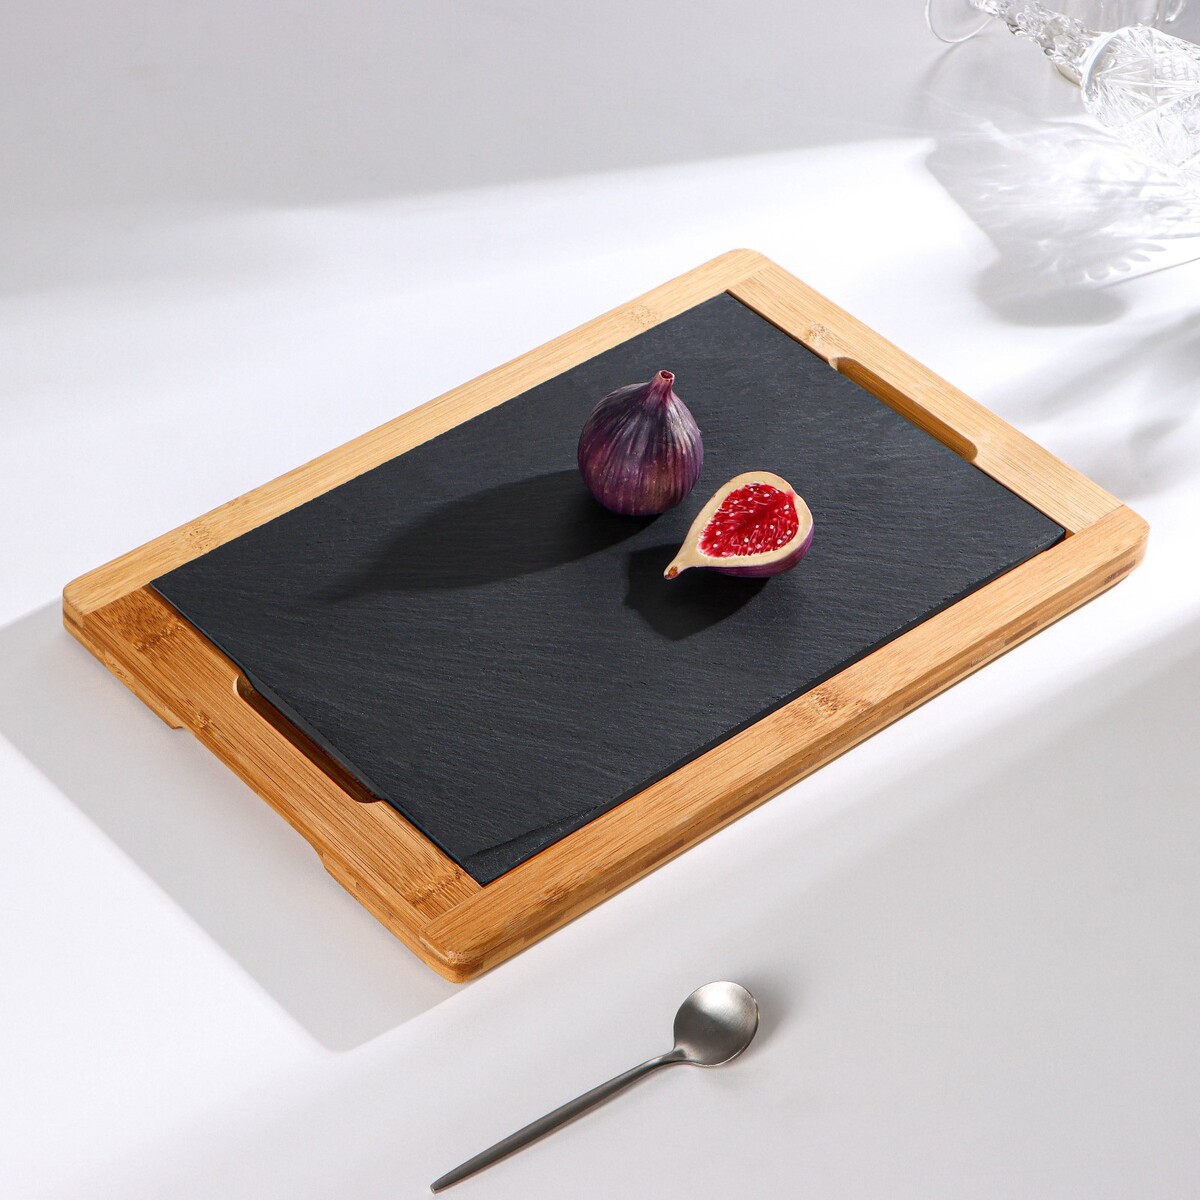 Блюдо для подачи magistro valley, 36×24 см, сланец, бамбук блюдо фарфоровое для подачи magistro pietra lunare d 21 см чёрный